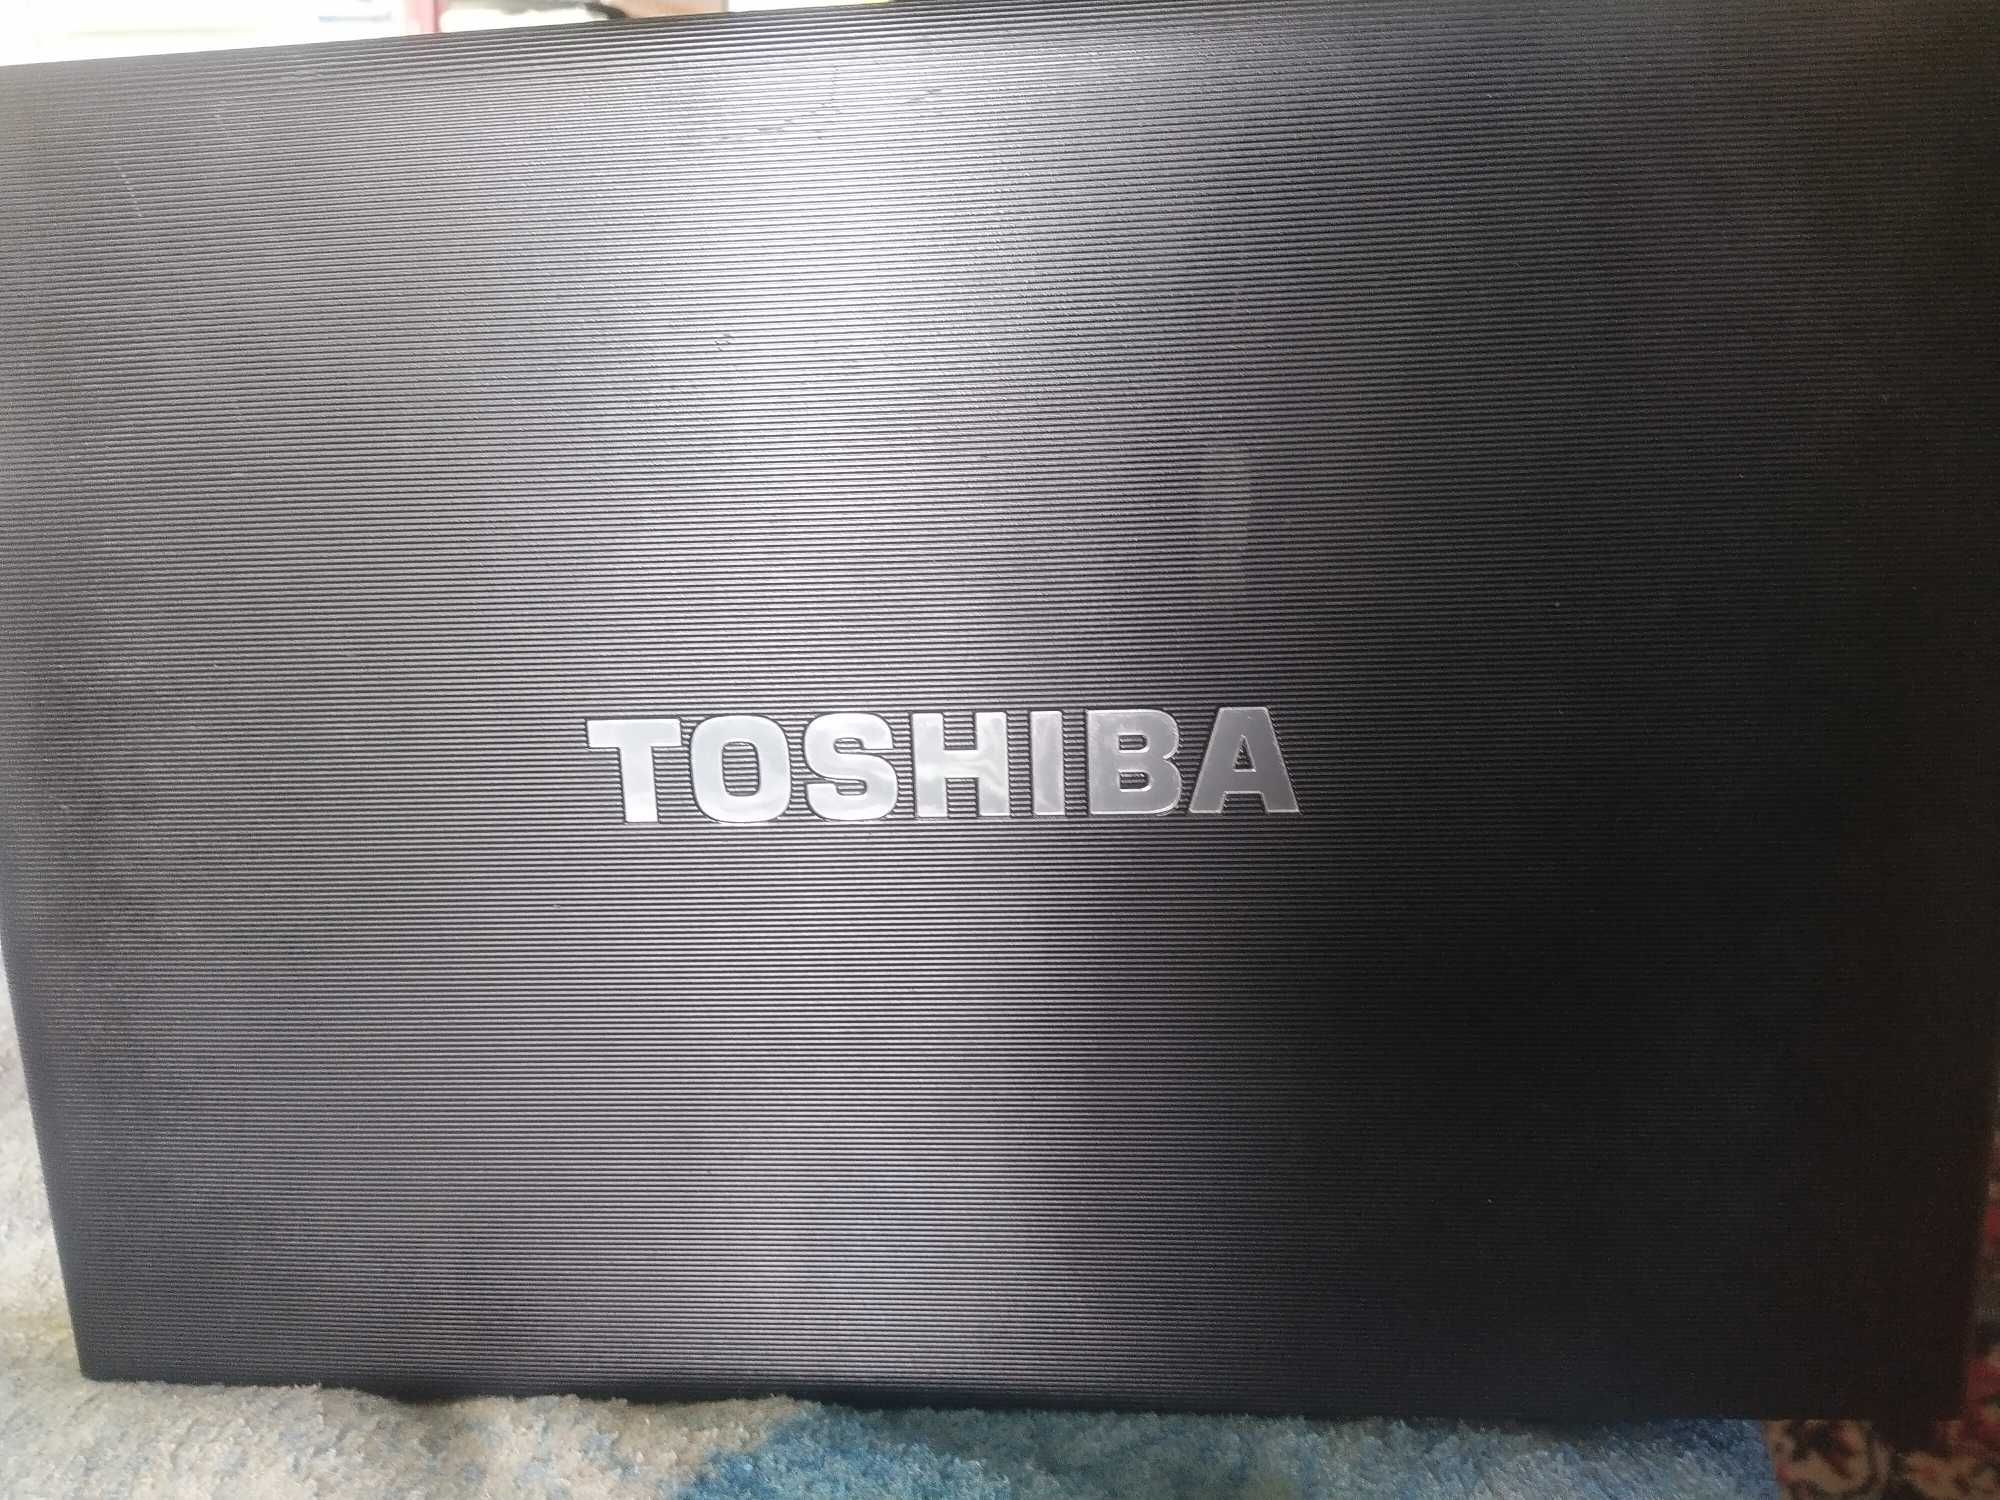 Laptop Dell Lattitude i7/Toshiba Tecra i7